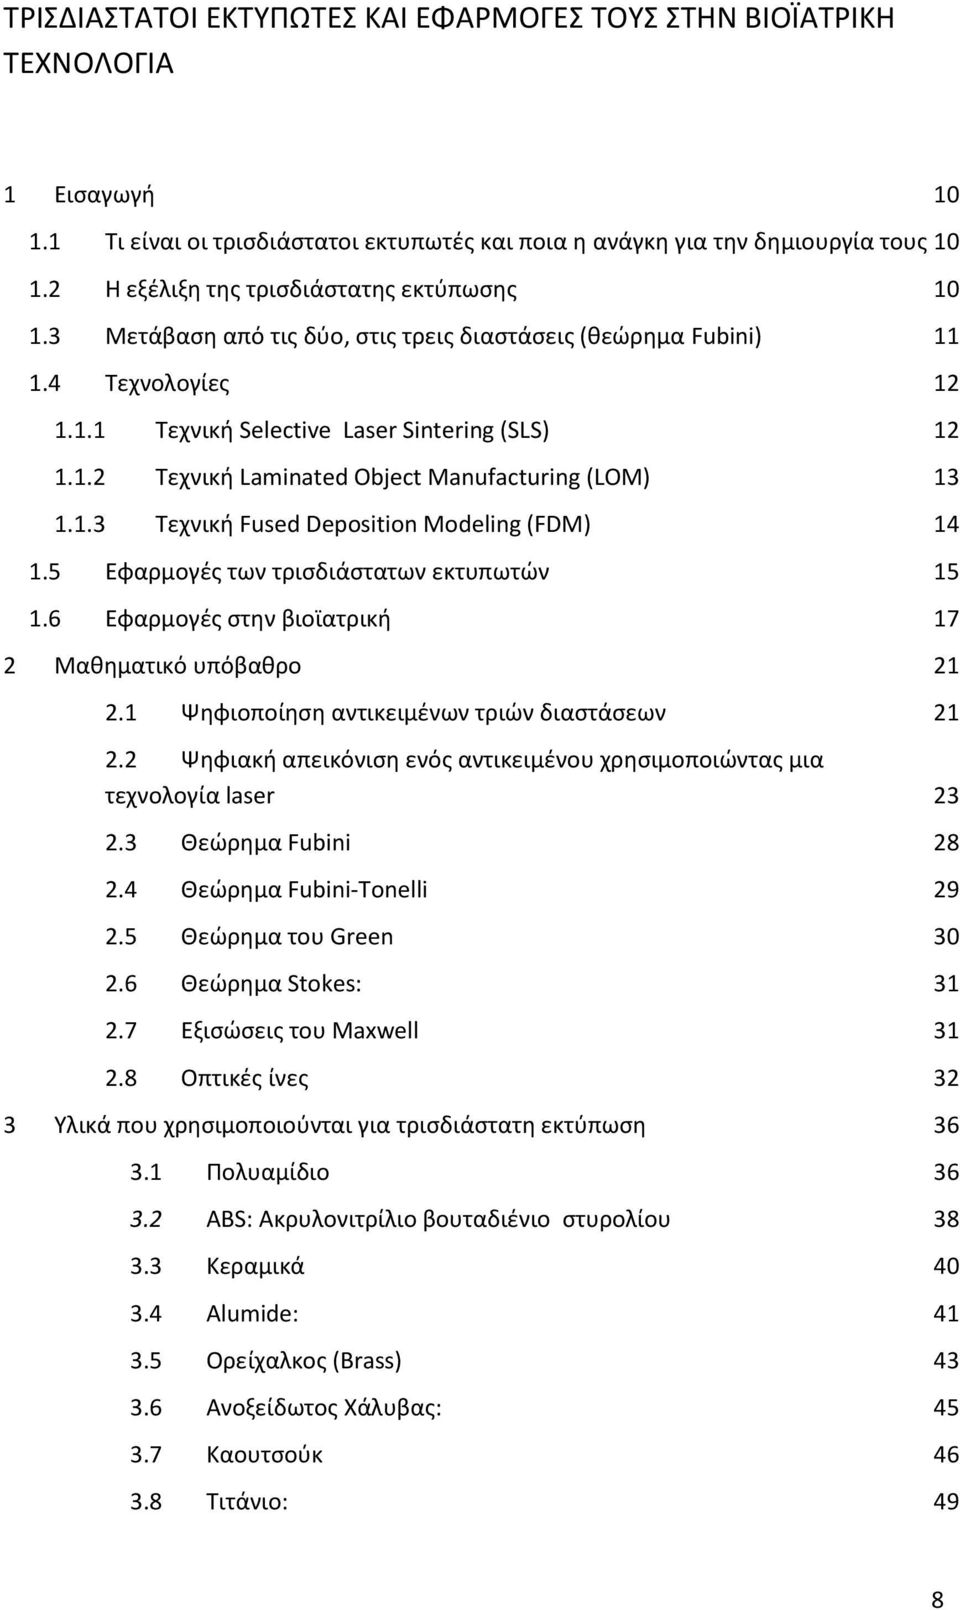 1.3 Τεχνική Fused Deposition Modeling (FDM) 14 1.5 Εφαρμογές των τρισδιάστατων εκτυπωτών 15 1.6 Εφαρμογές στην βιοϊατρική 17 2 Μαθηματικό υπόβαθρο 21 2.